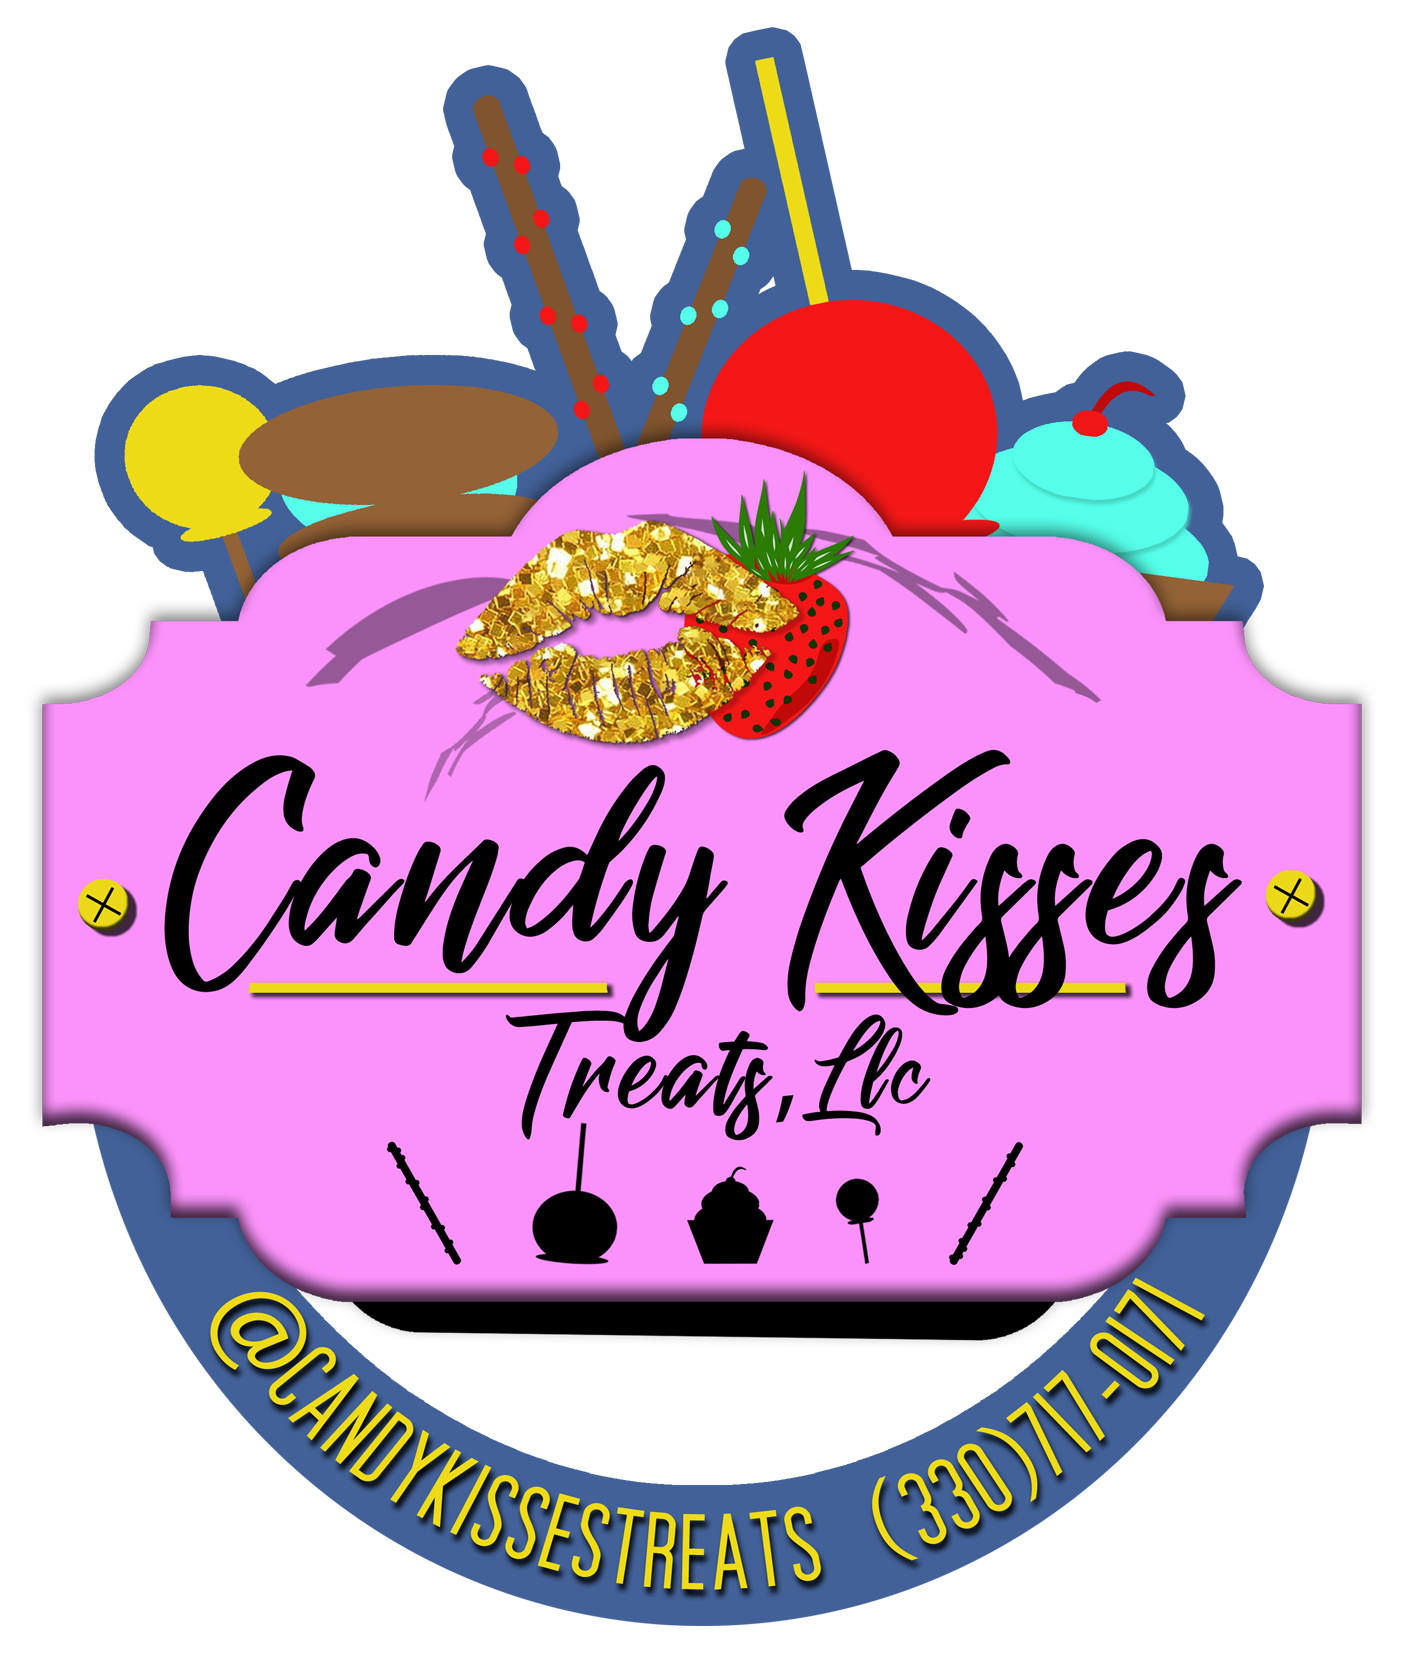 Candy Kisses Treats LLC